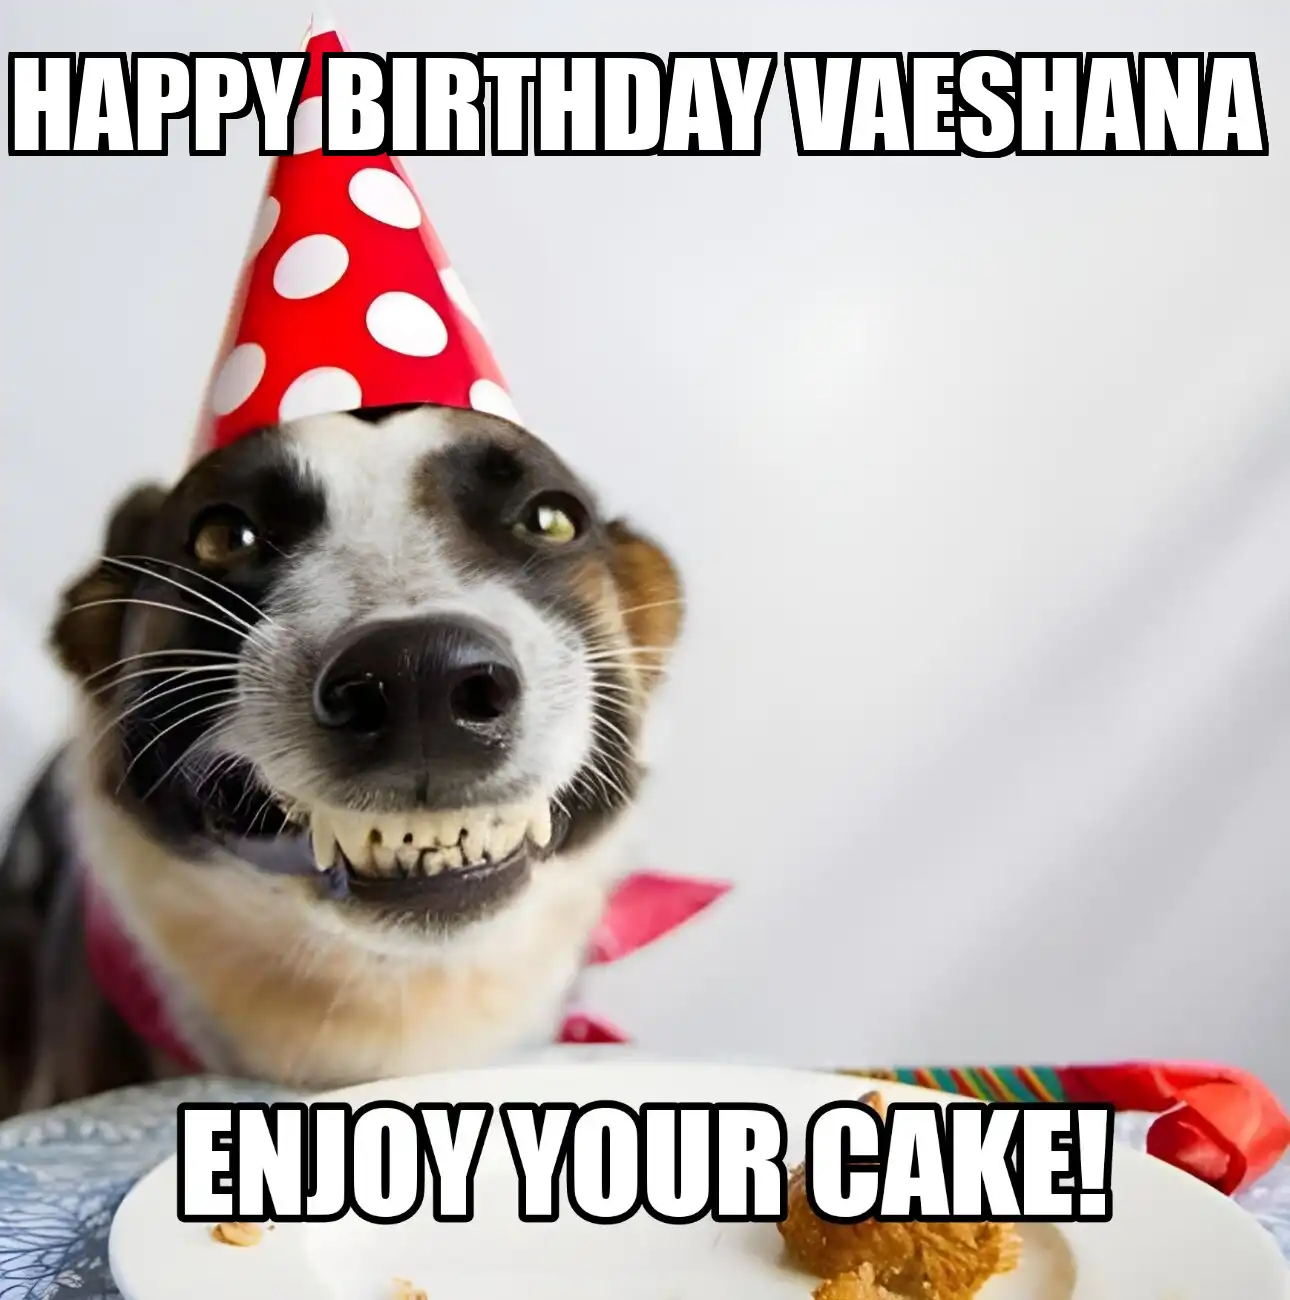 Happy Birthday Vaeshana Enjoy Your Cake Dog Meme